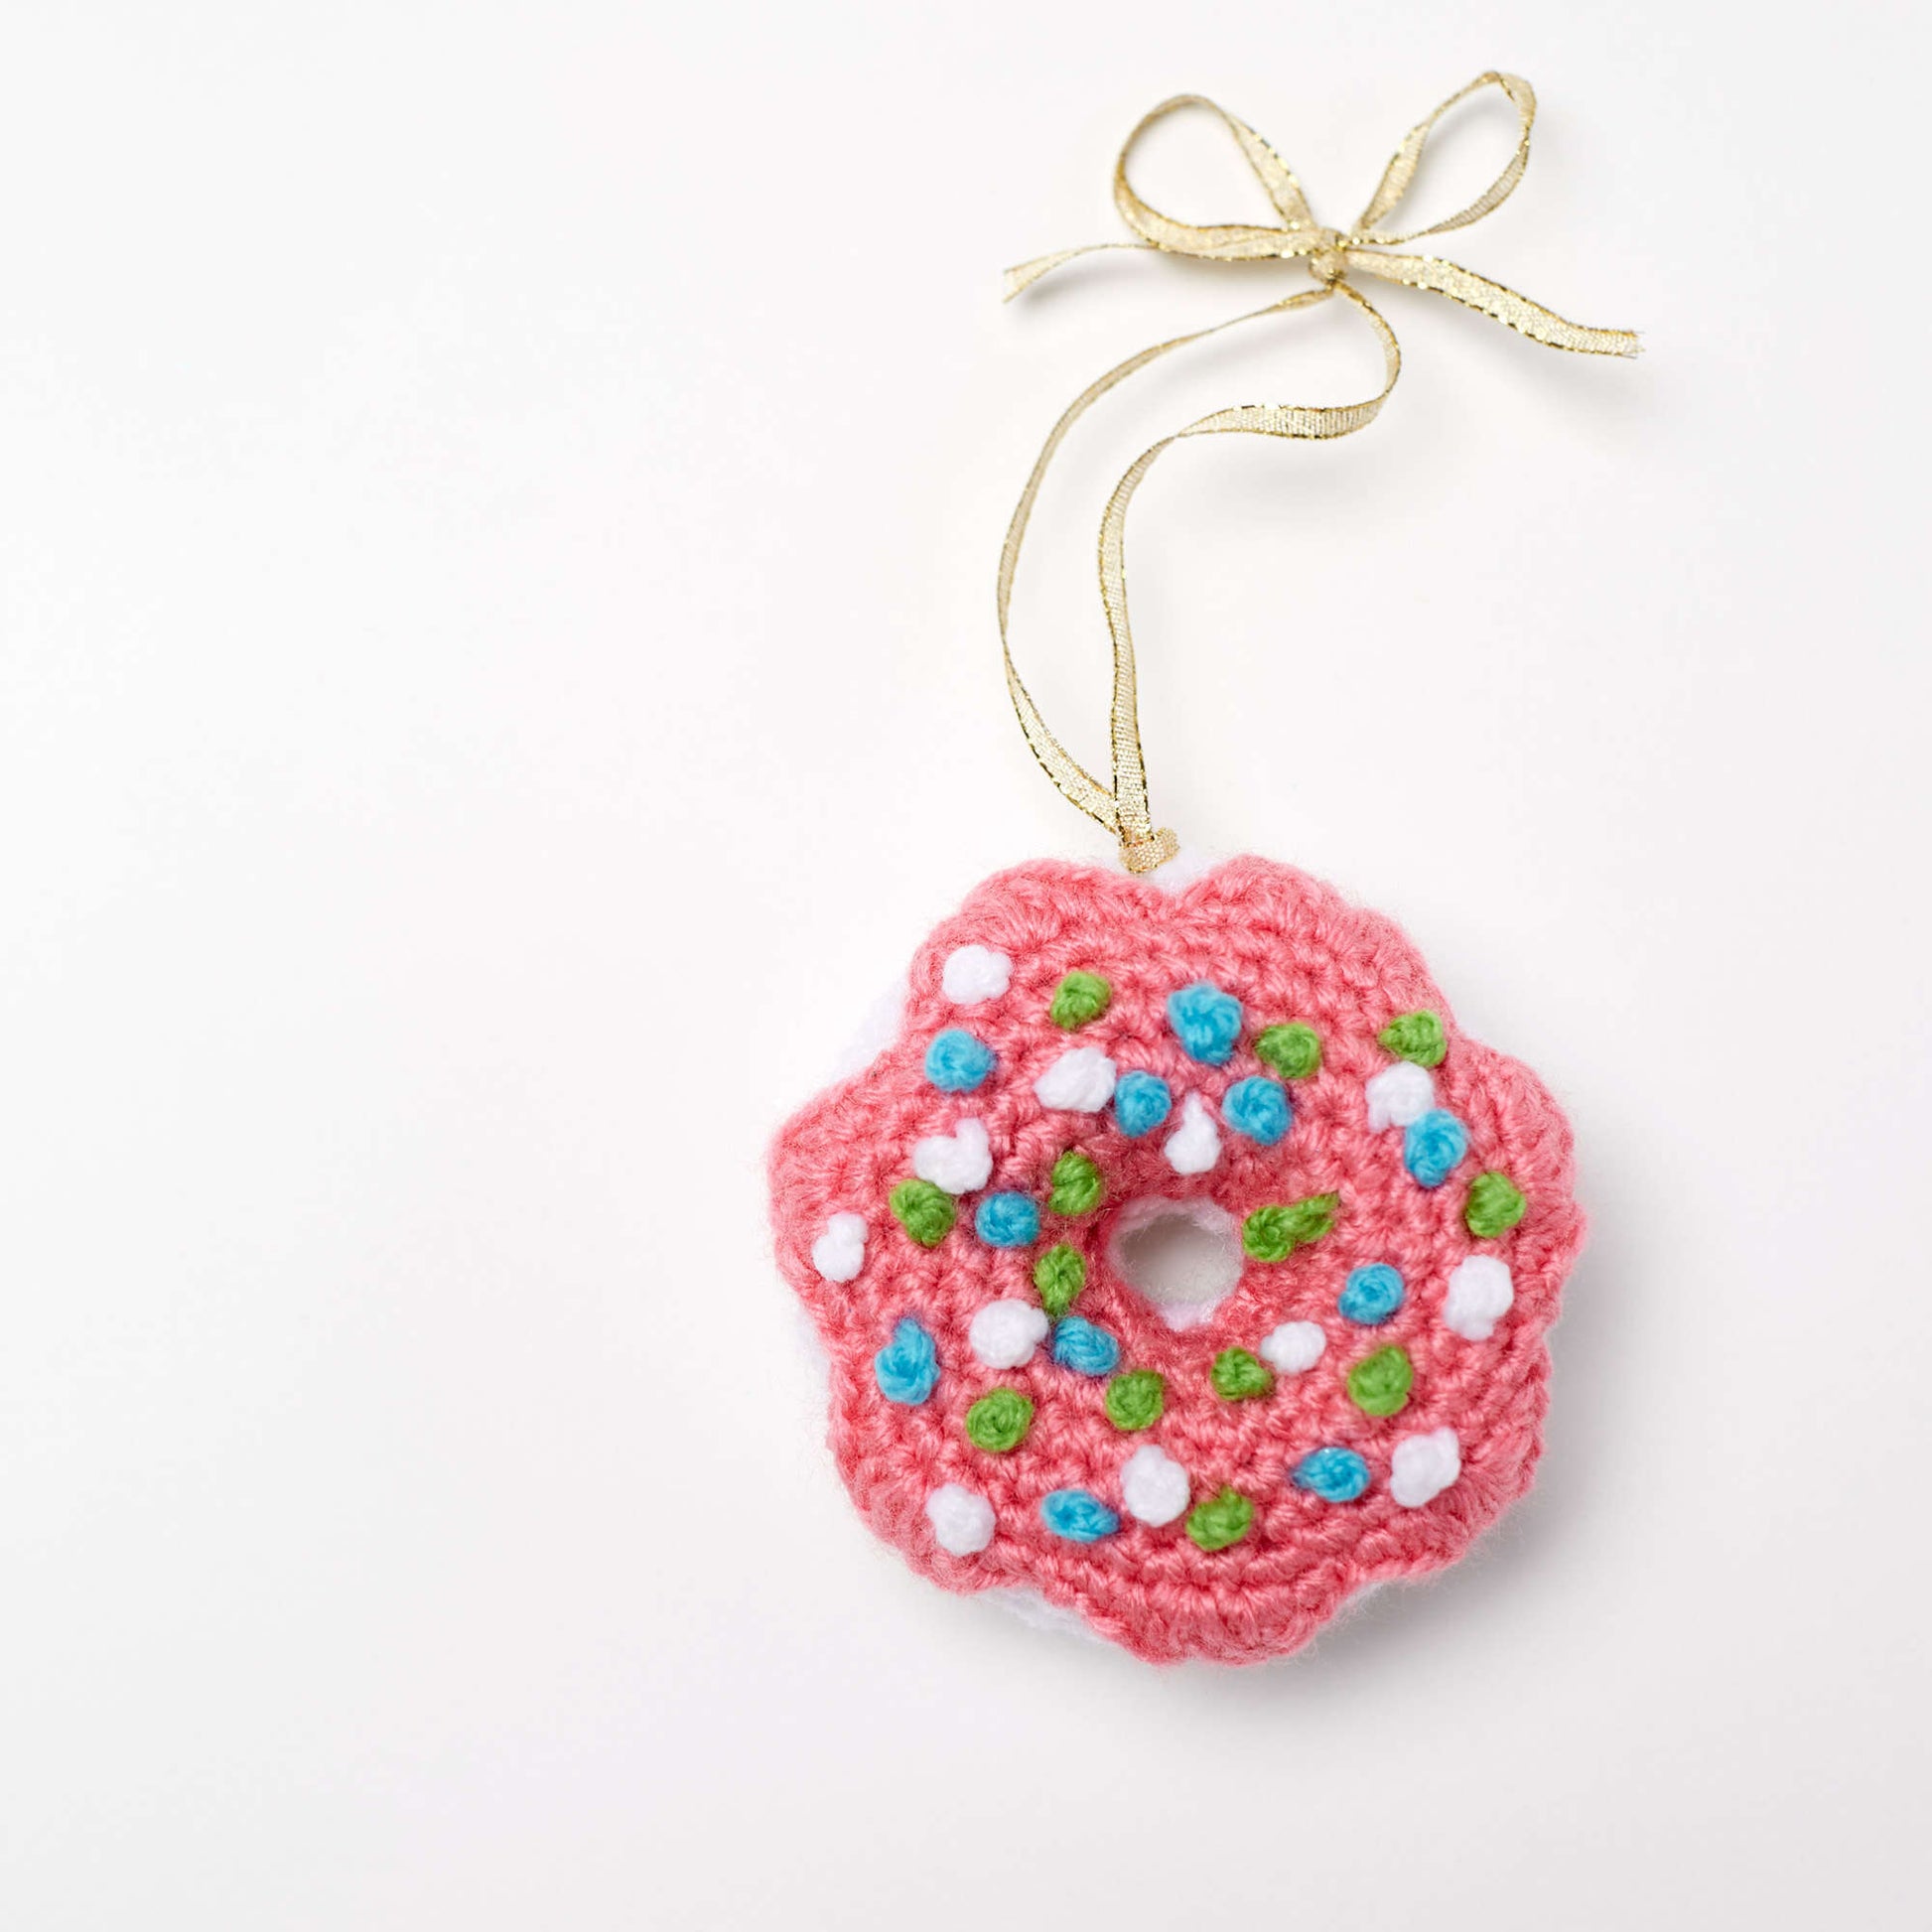 Free Red Heart Crochet Dangling Donut Ornament Pattern